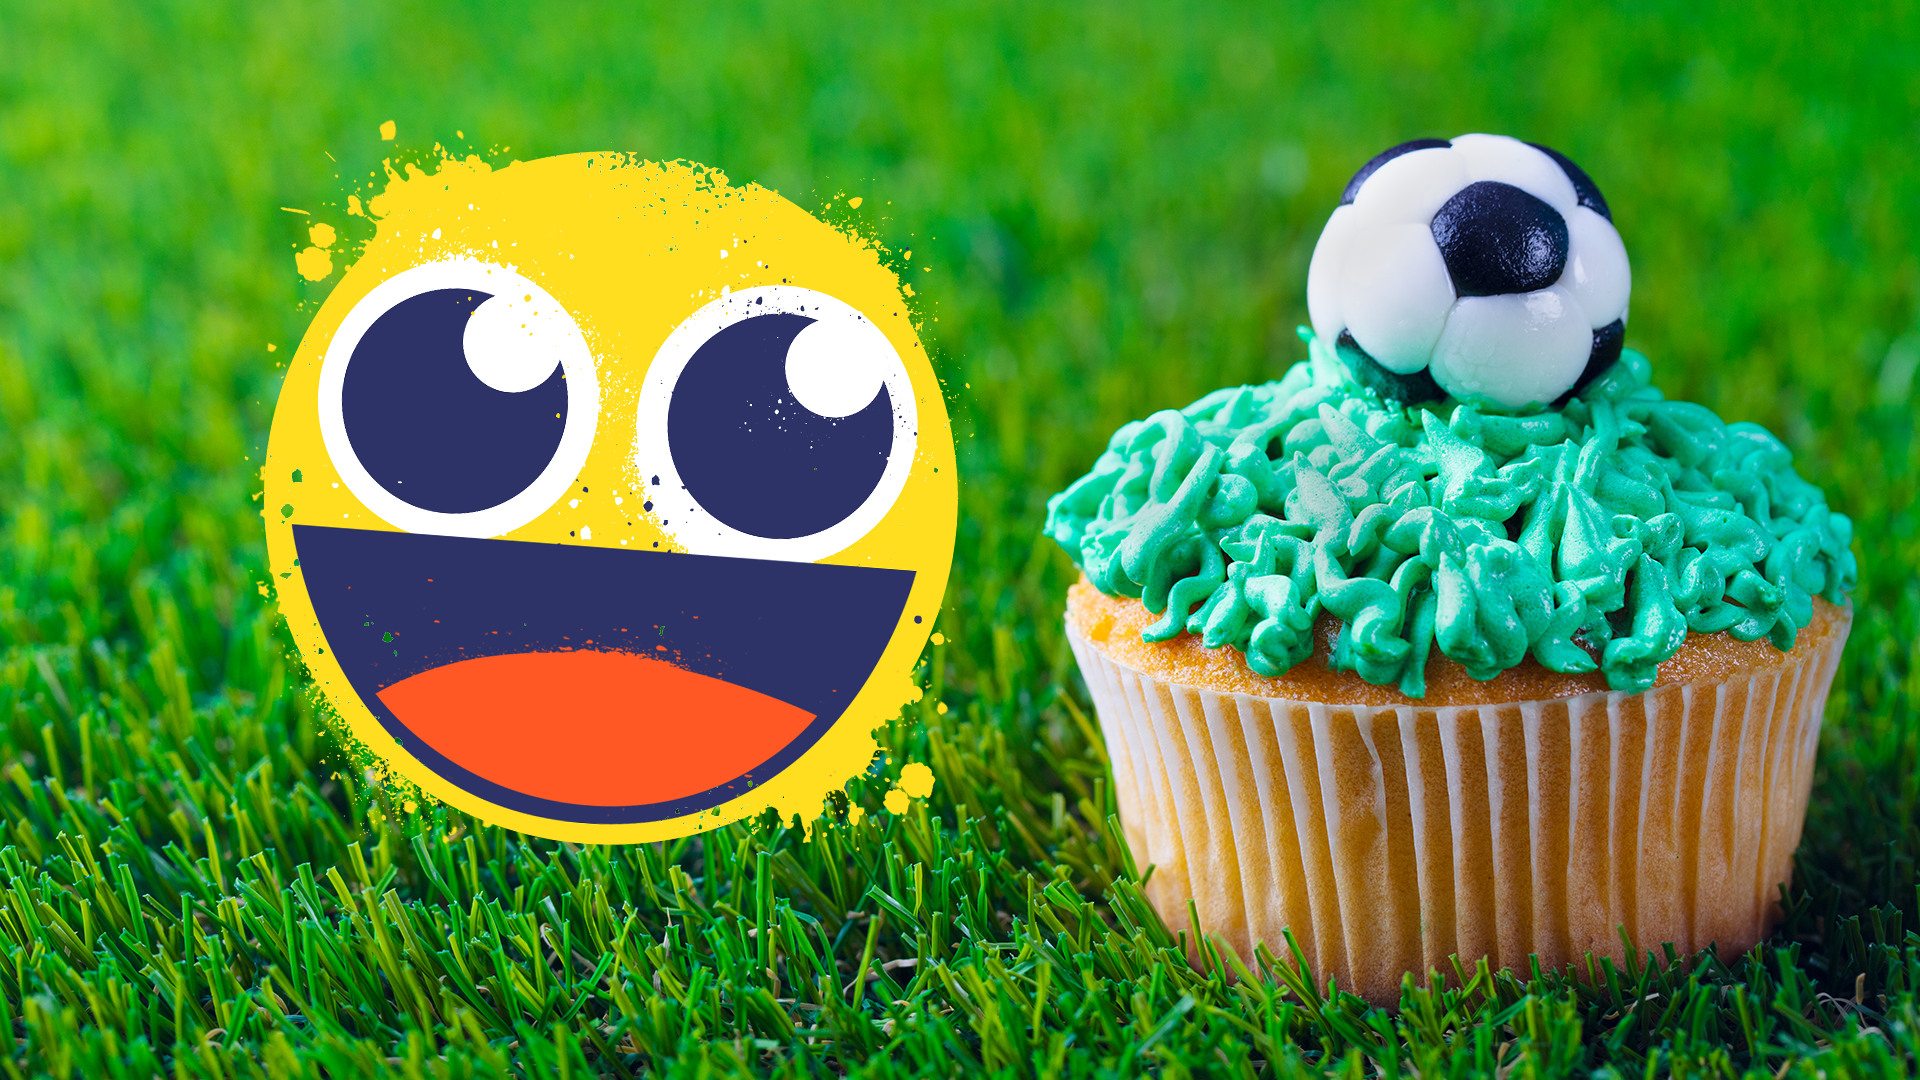 Smiley emoji and football cupcake